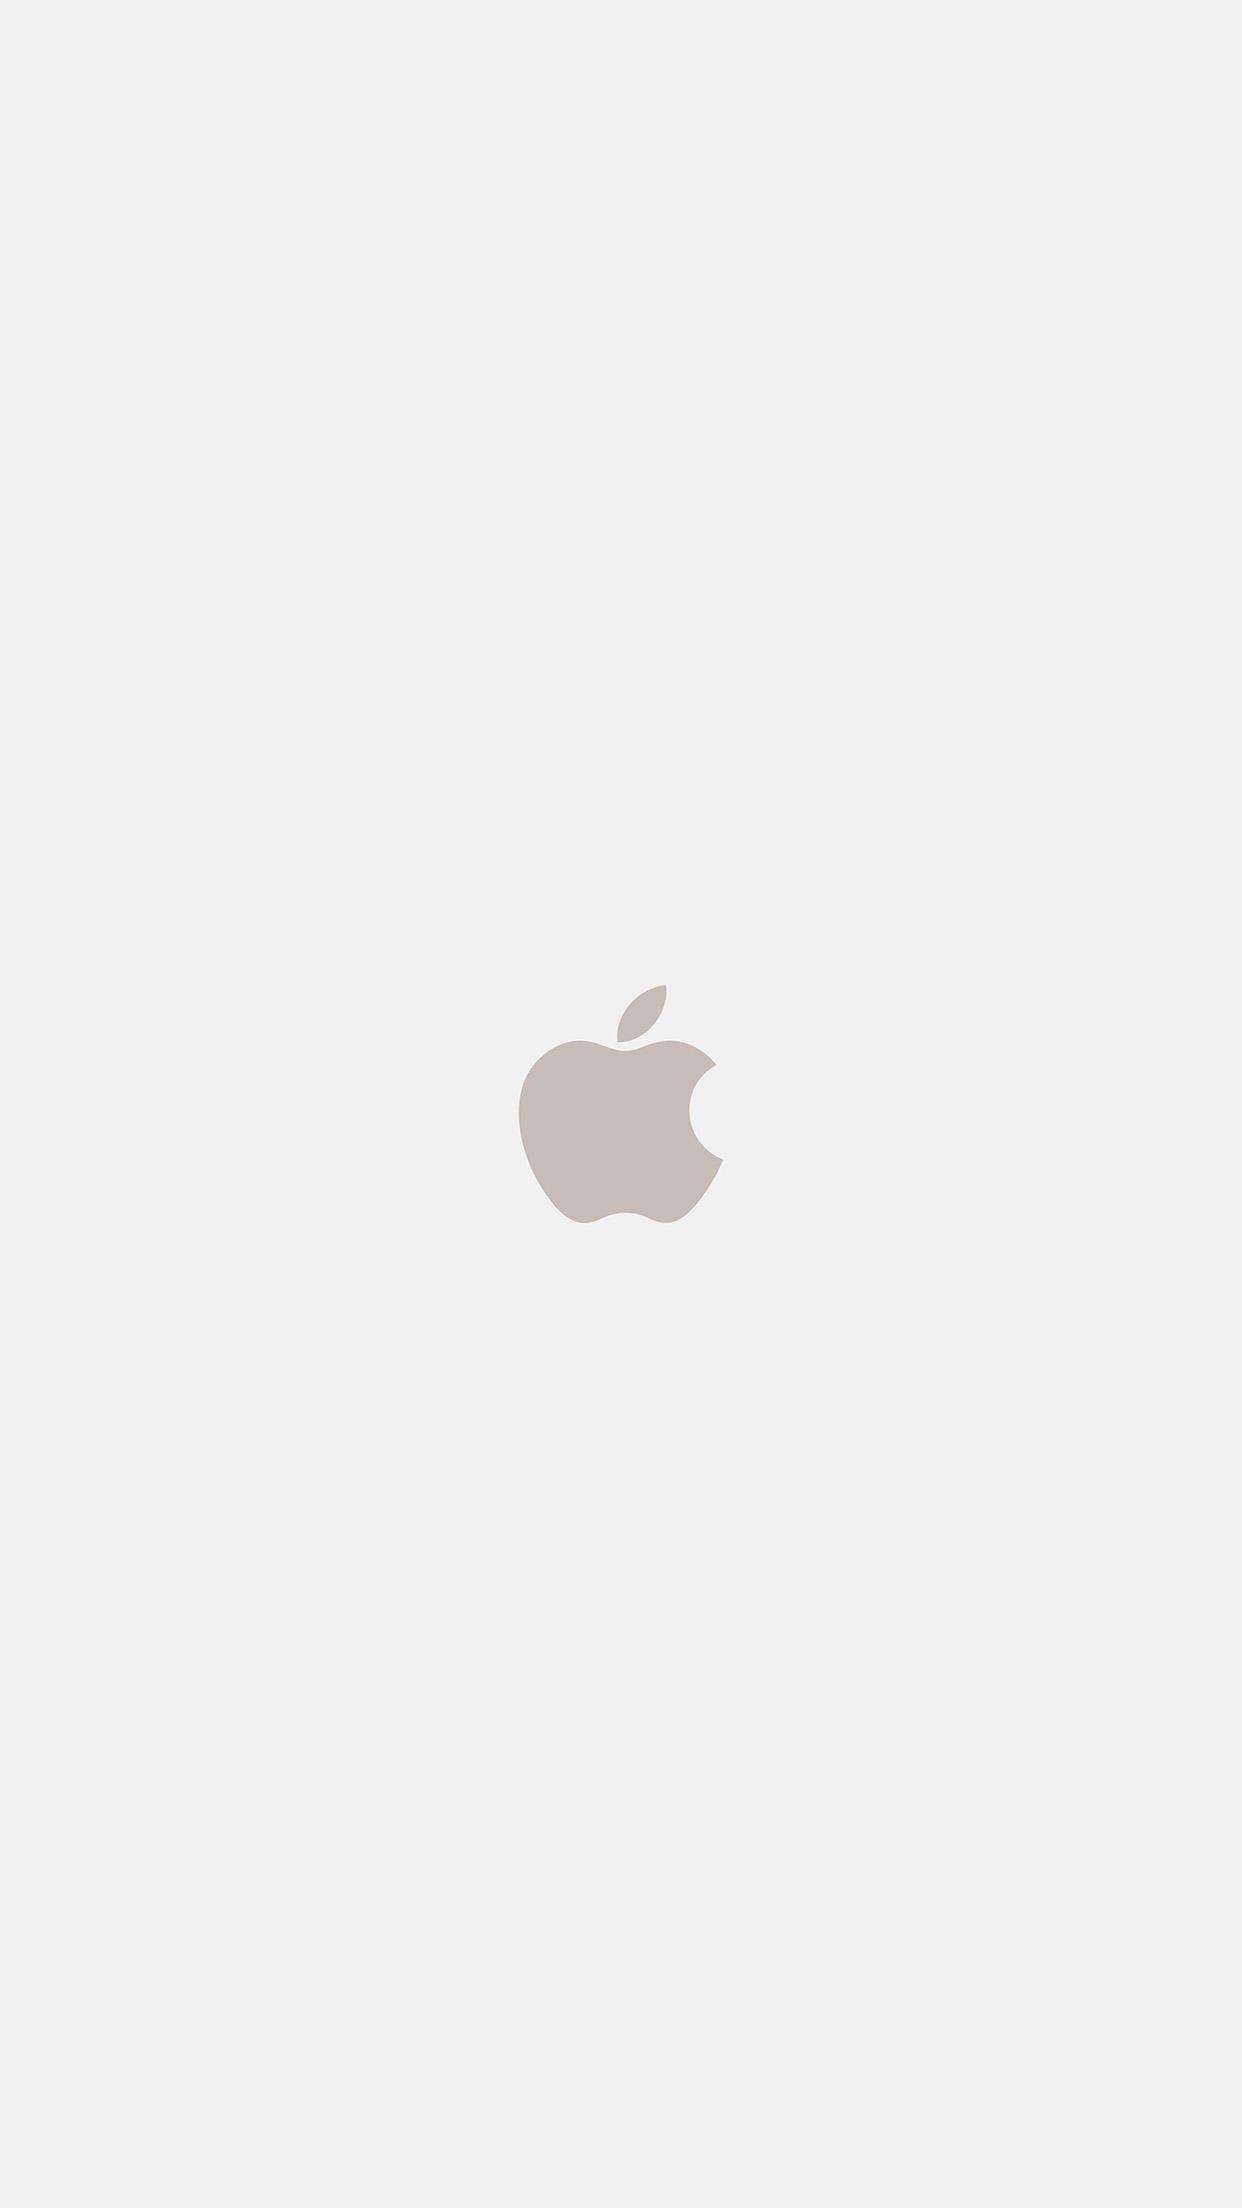 Iphone7 Apple Logo White Gold Art Illustration Wallpaper